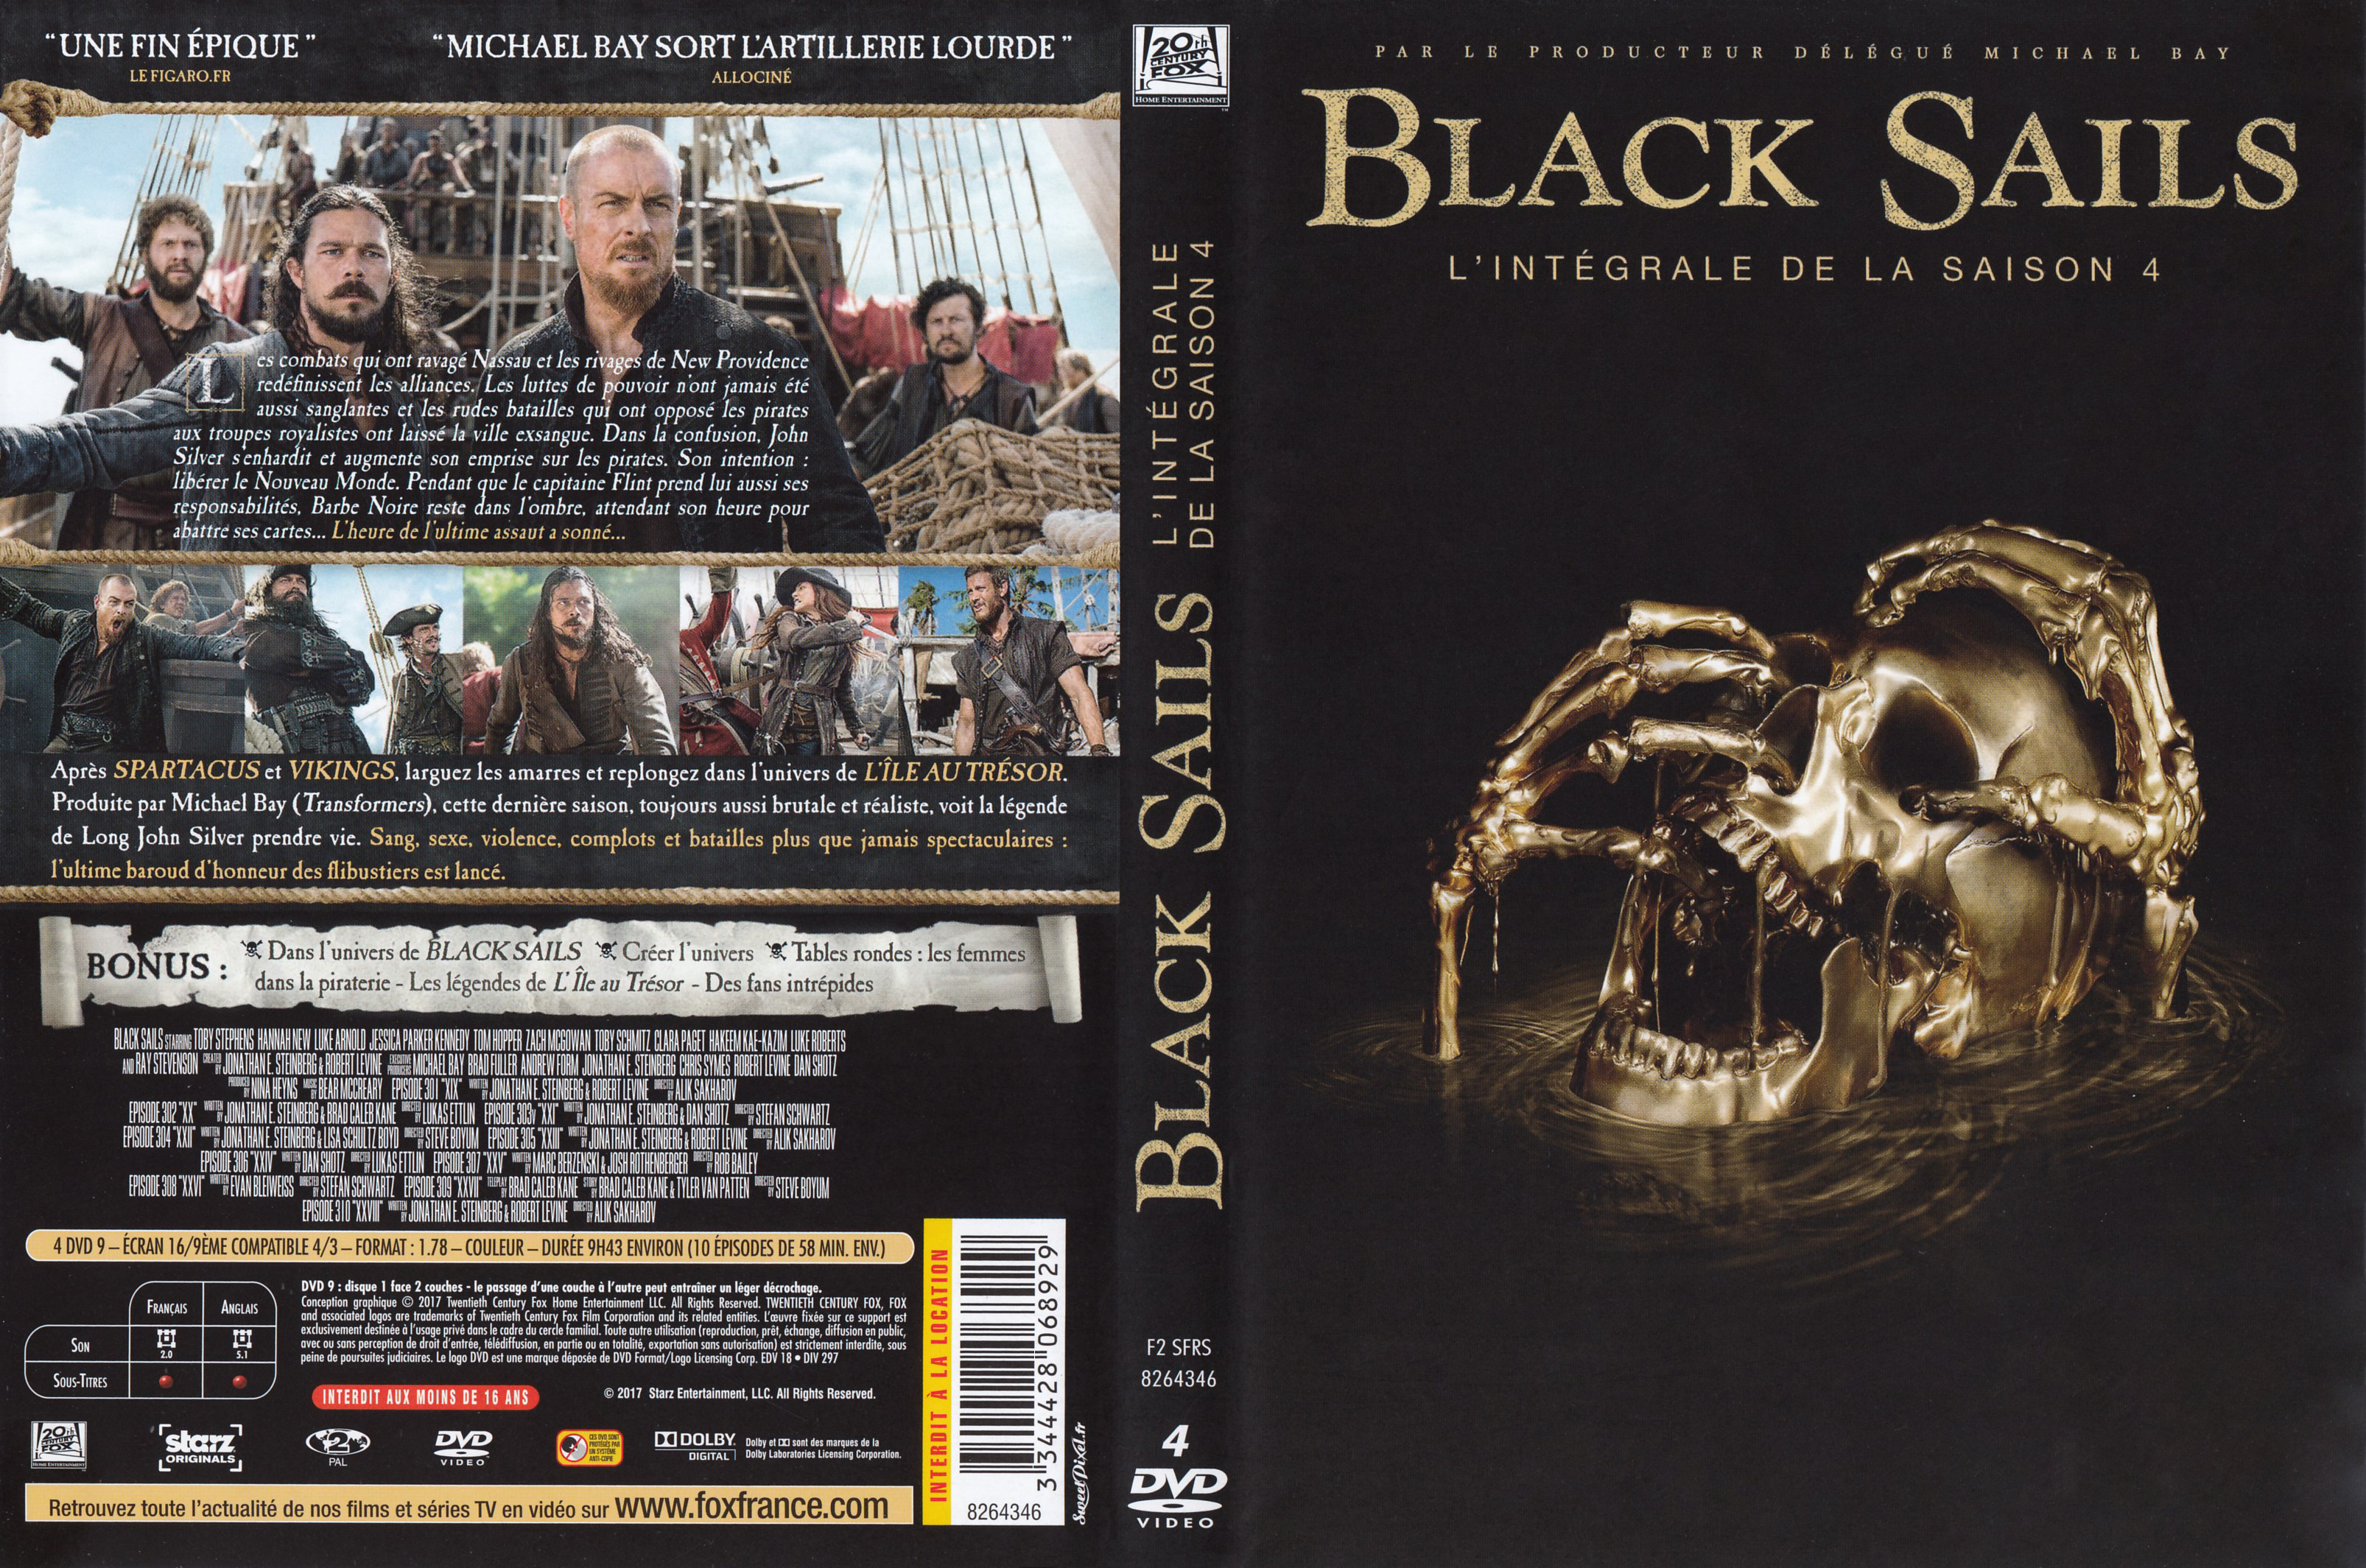 Jaquette DVD Black Sails saison 4